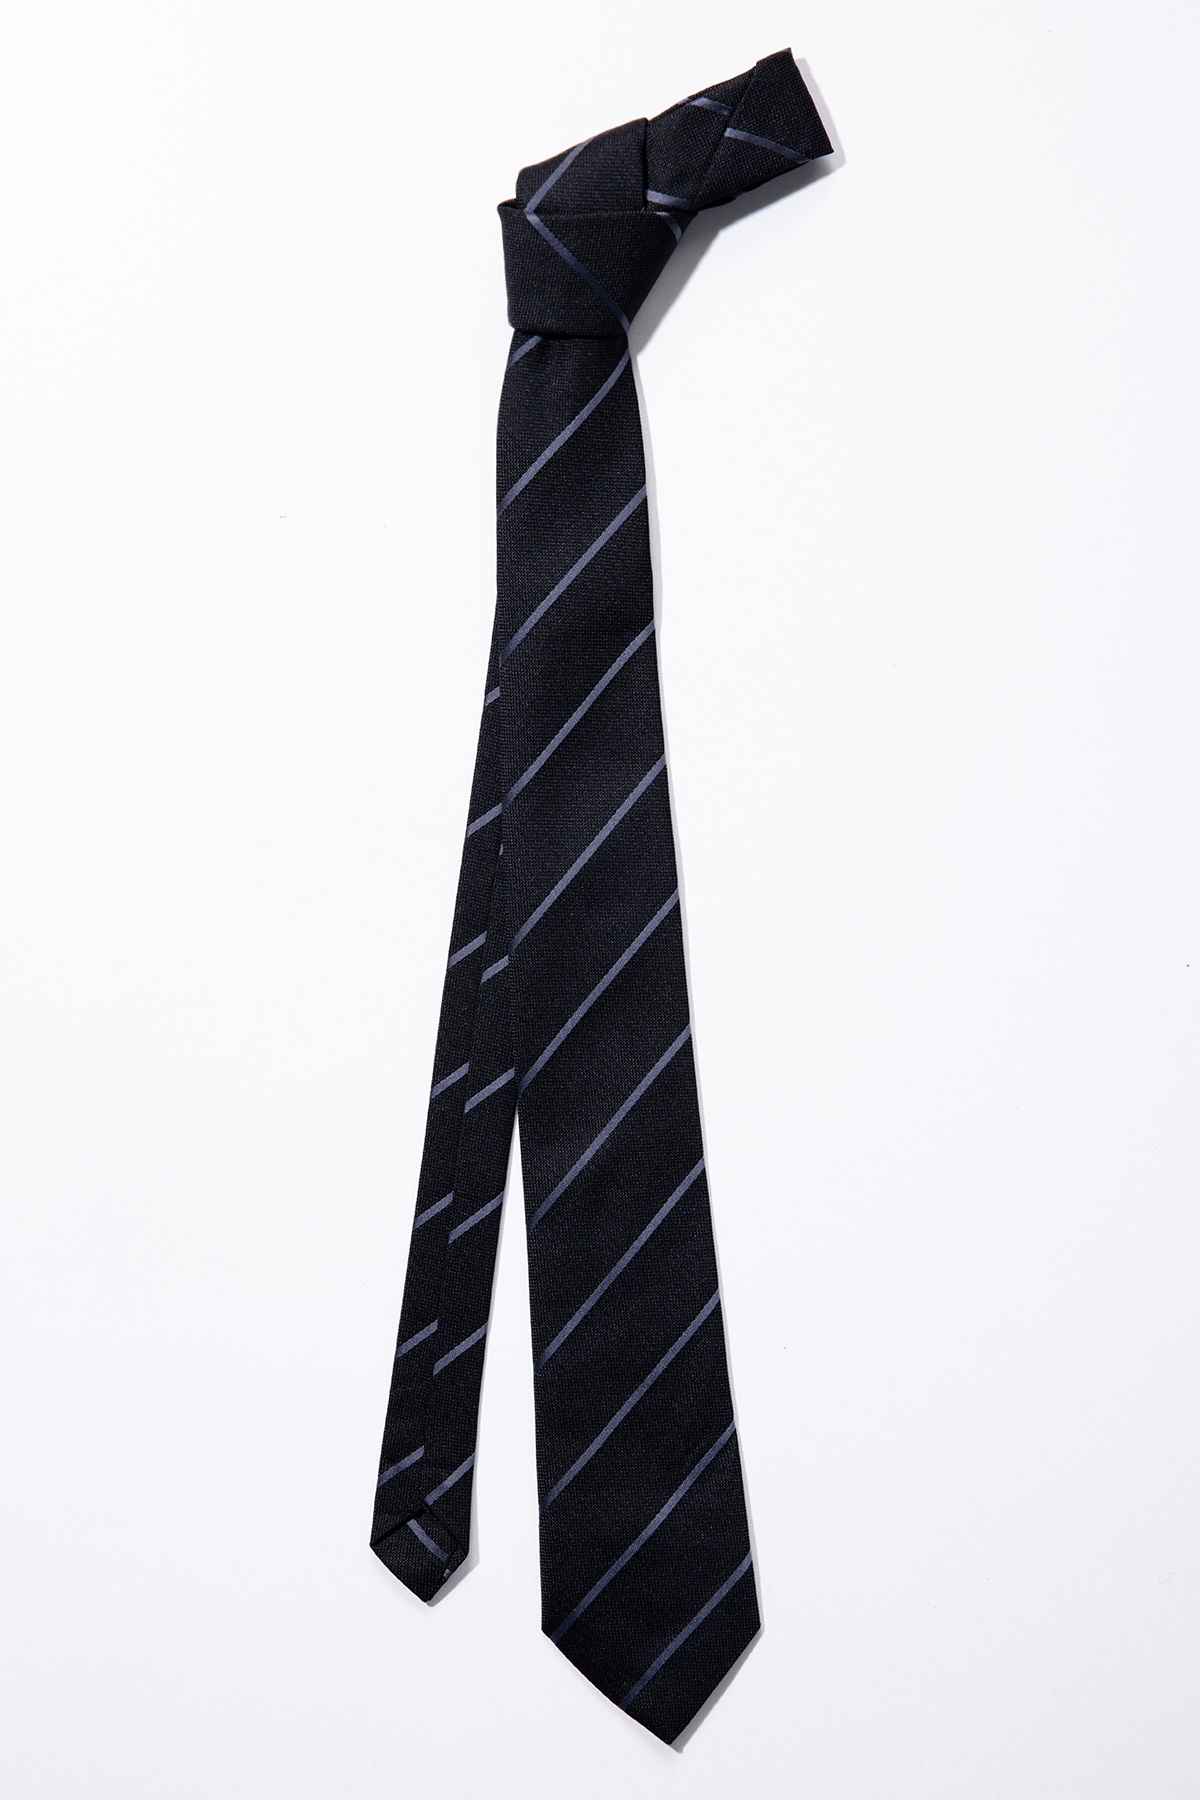  черный галстук